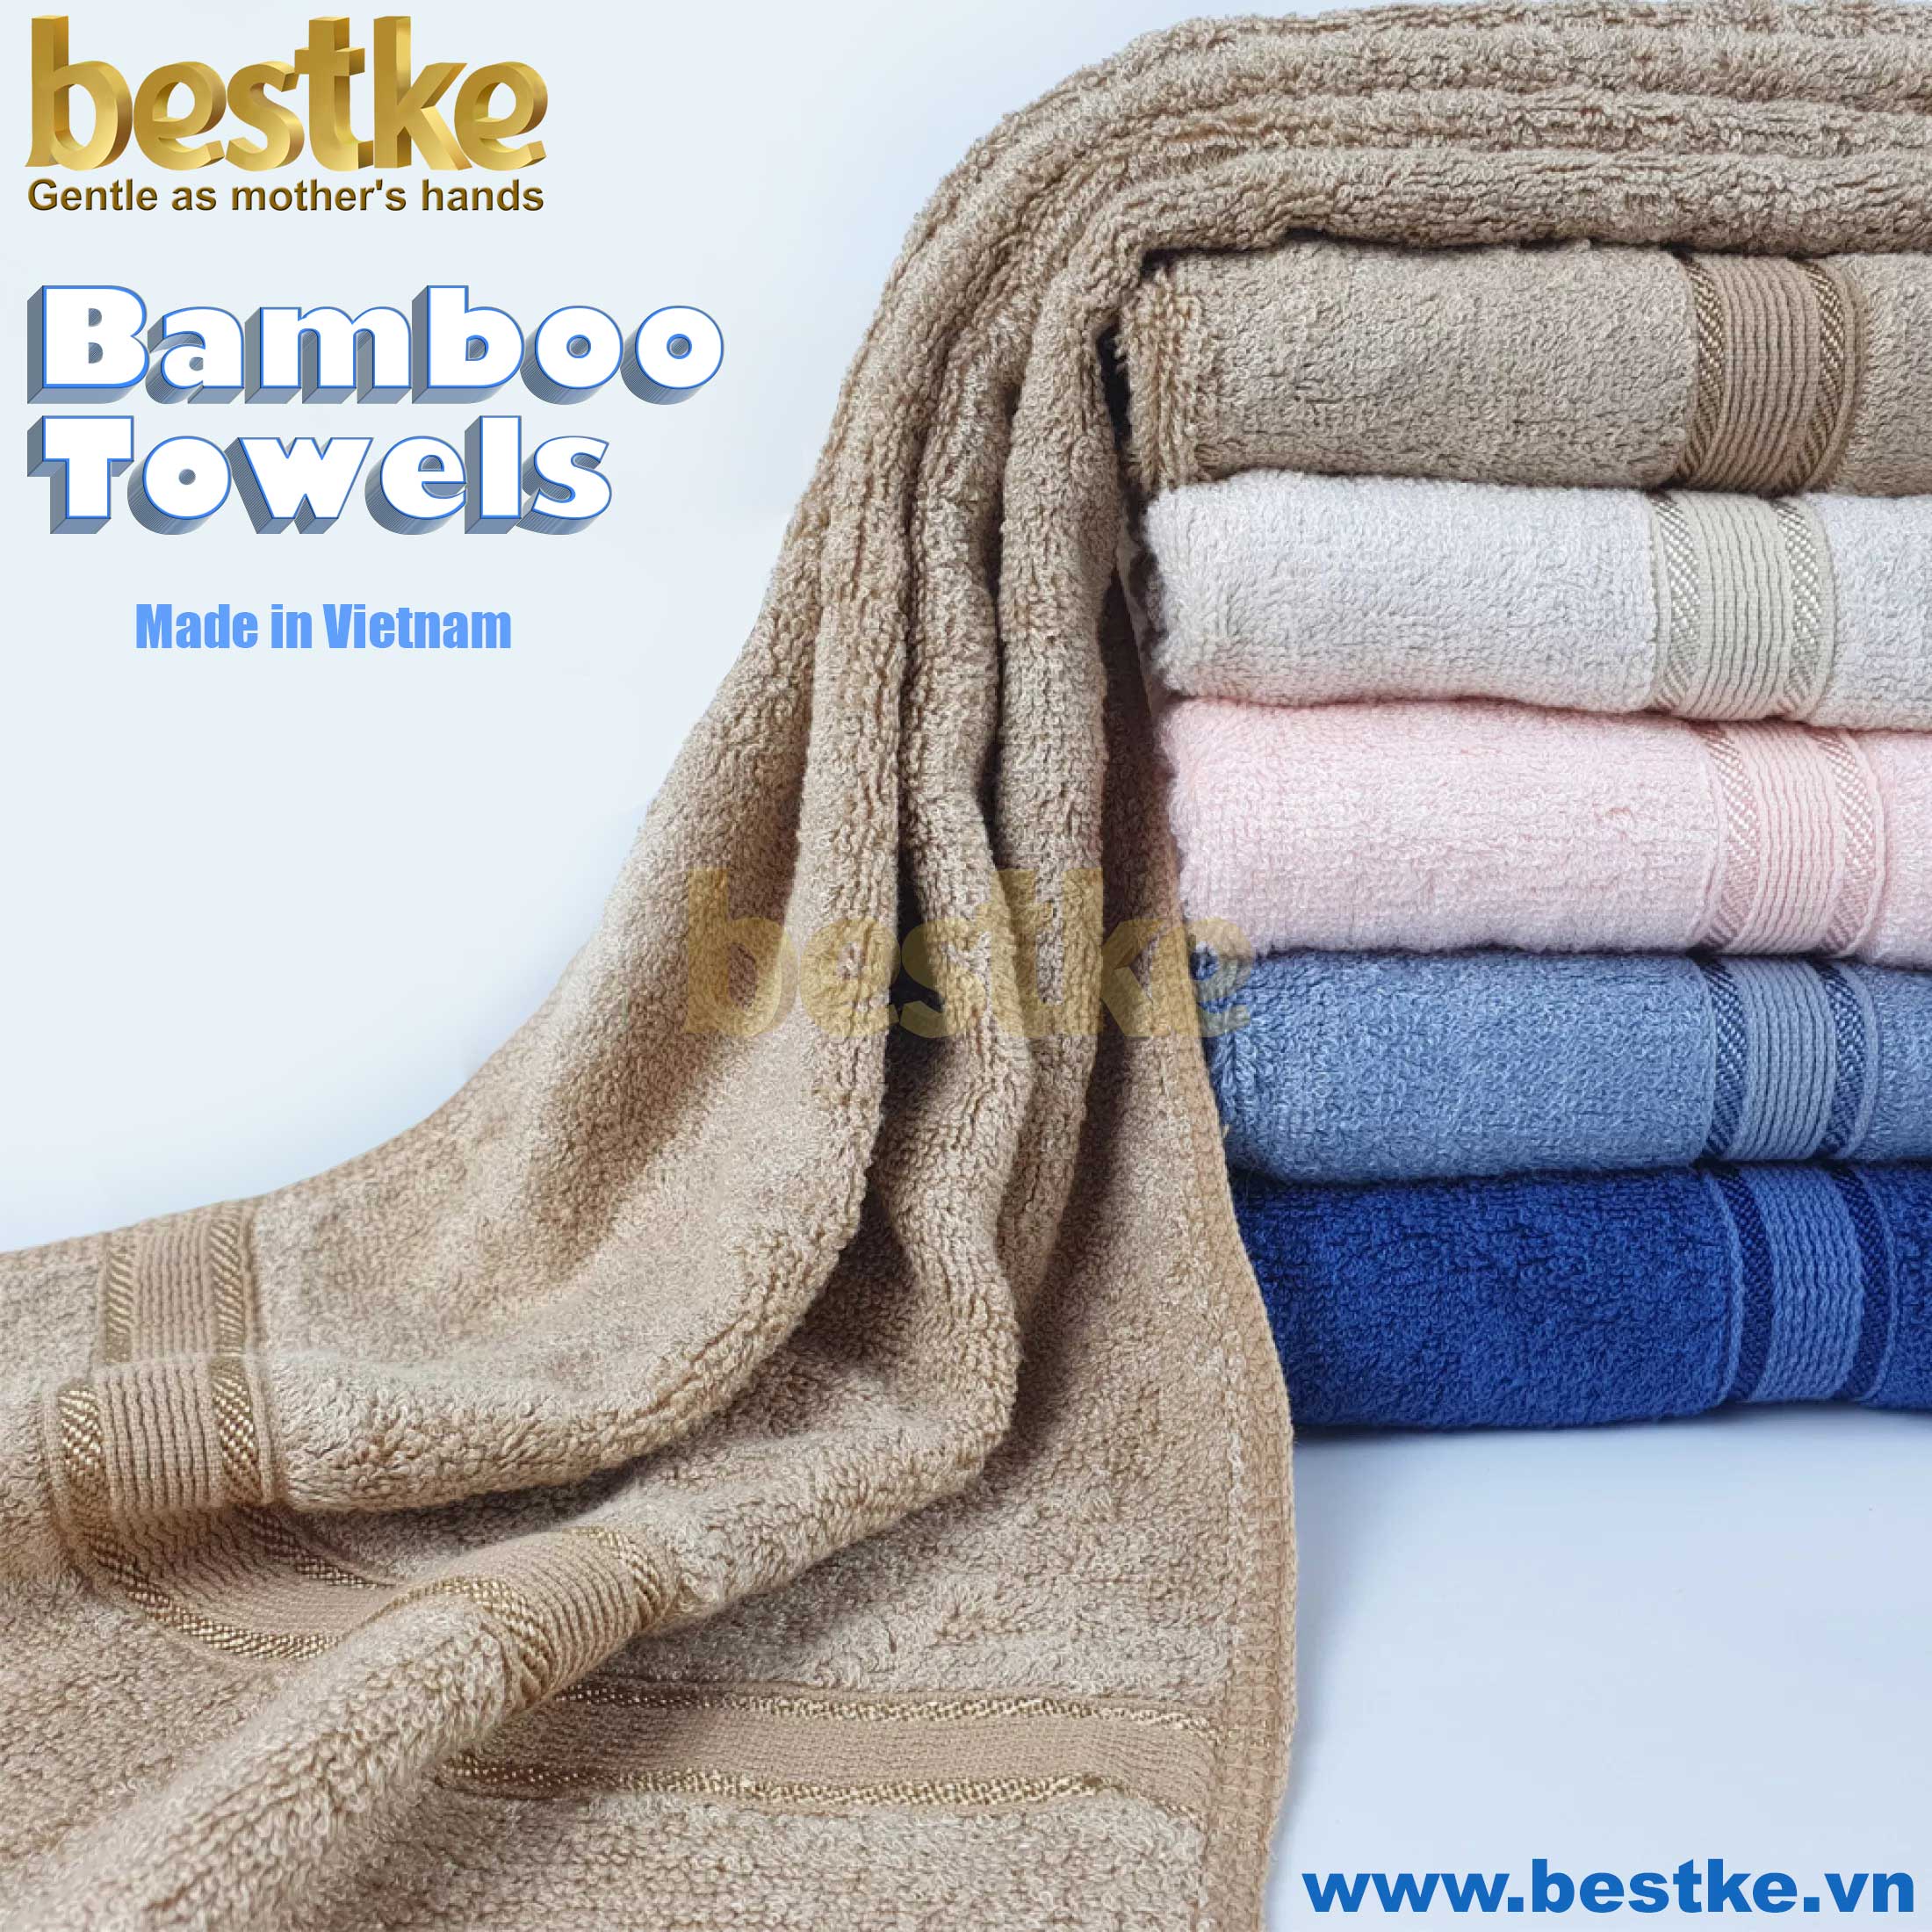 BỘ 3 Khăn Tắm, Khăn Gội, Khăn Mặt Bamboo Bestke Cao cấp Xuất khẩu Hàn Quốc màu Cafe Sữa, Bamboo Towel